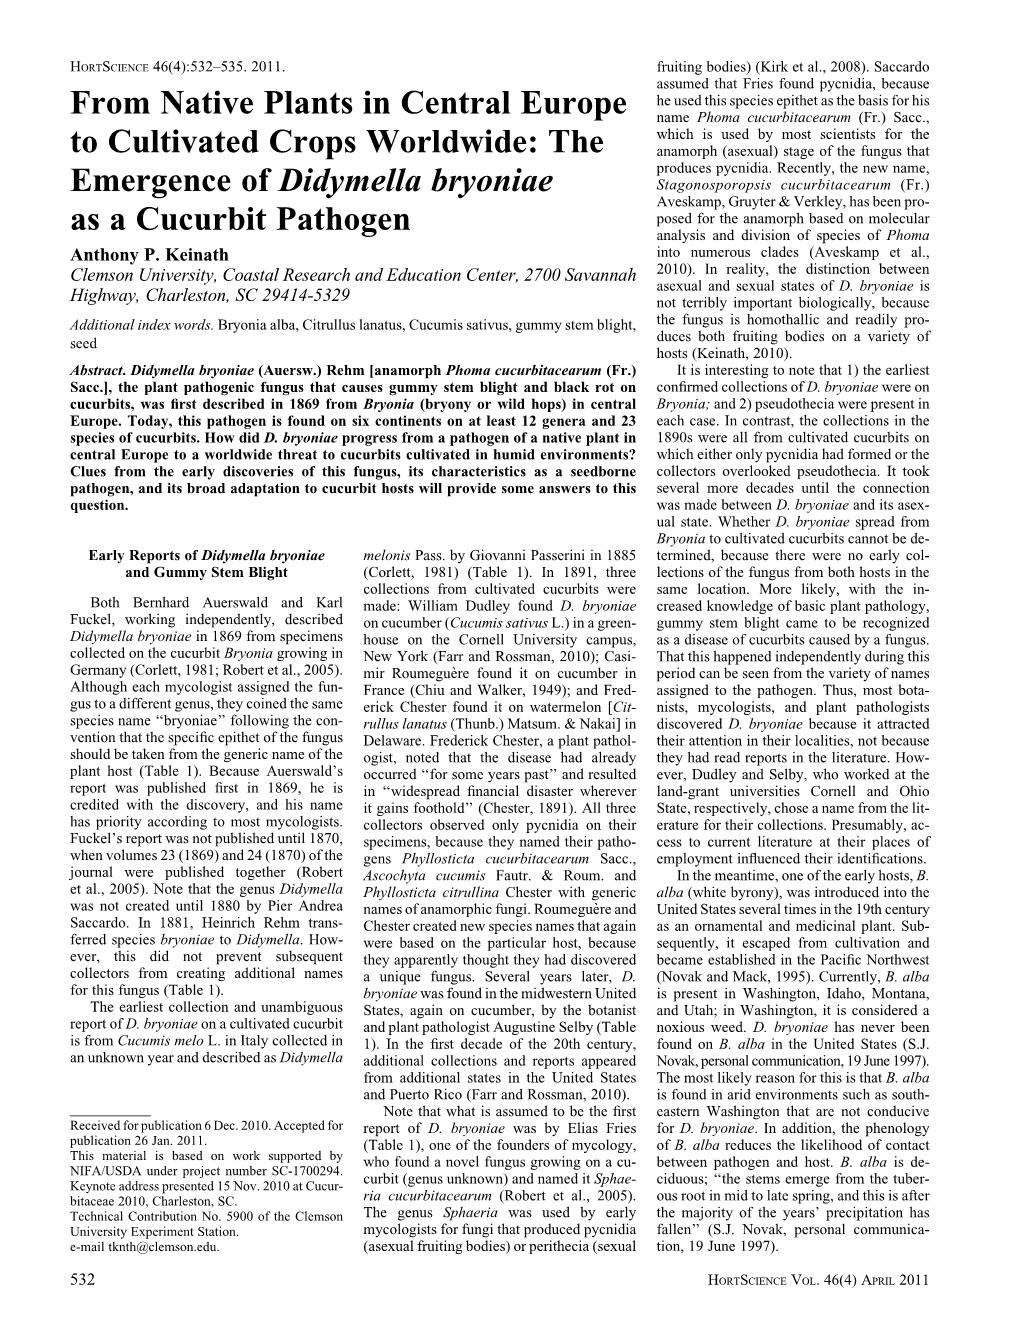 The Emergence of Didymella Bryoniae As a Cucurbit Pathogen